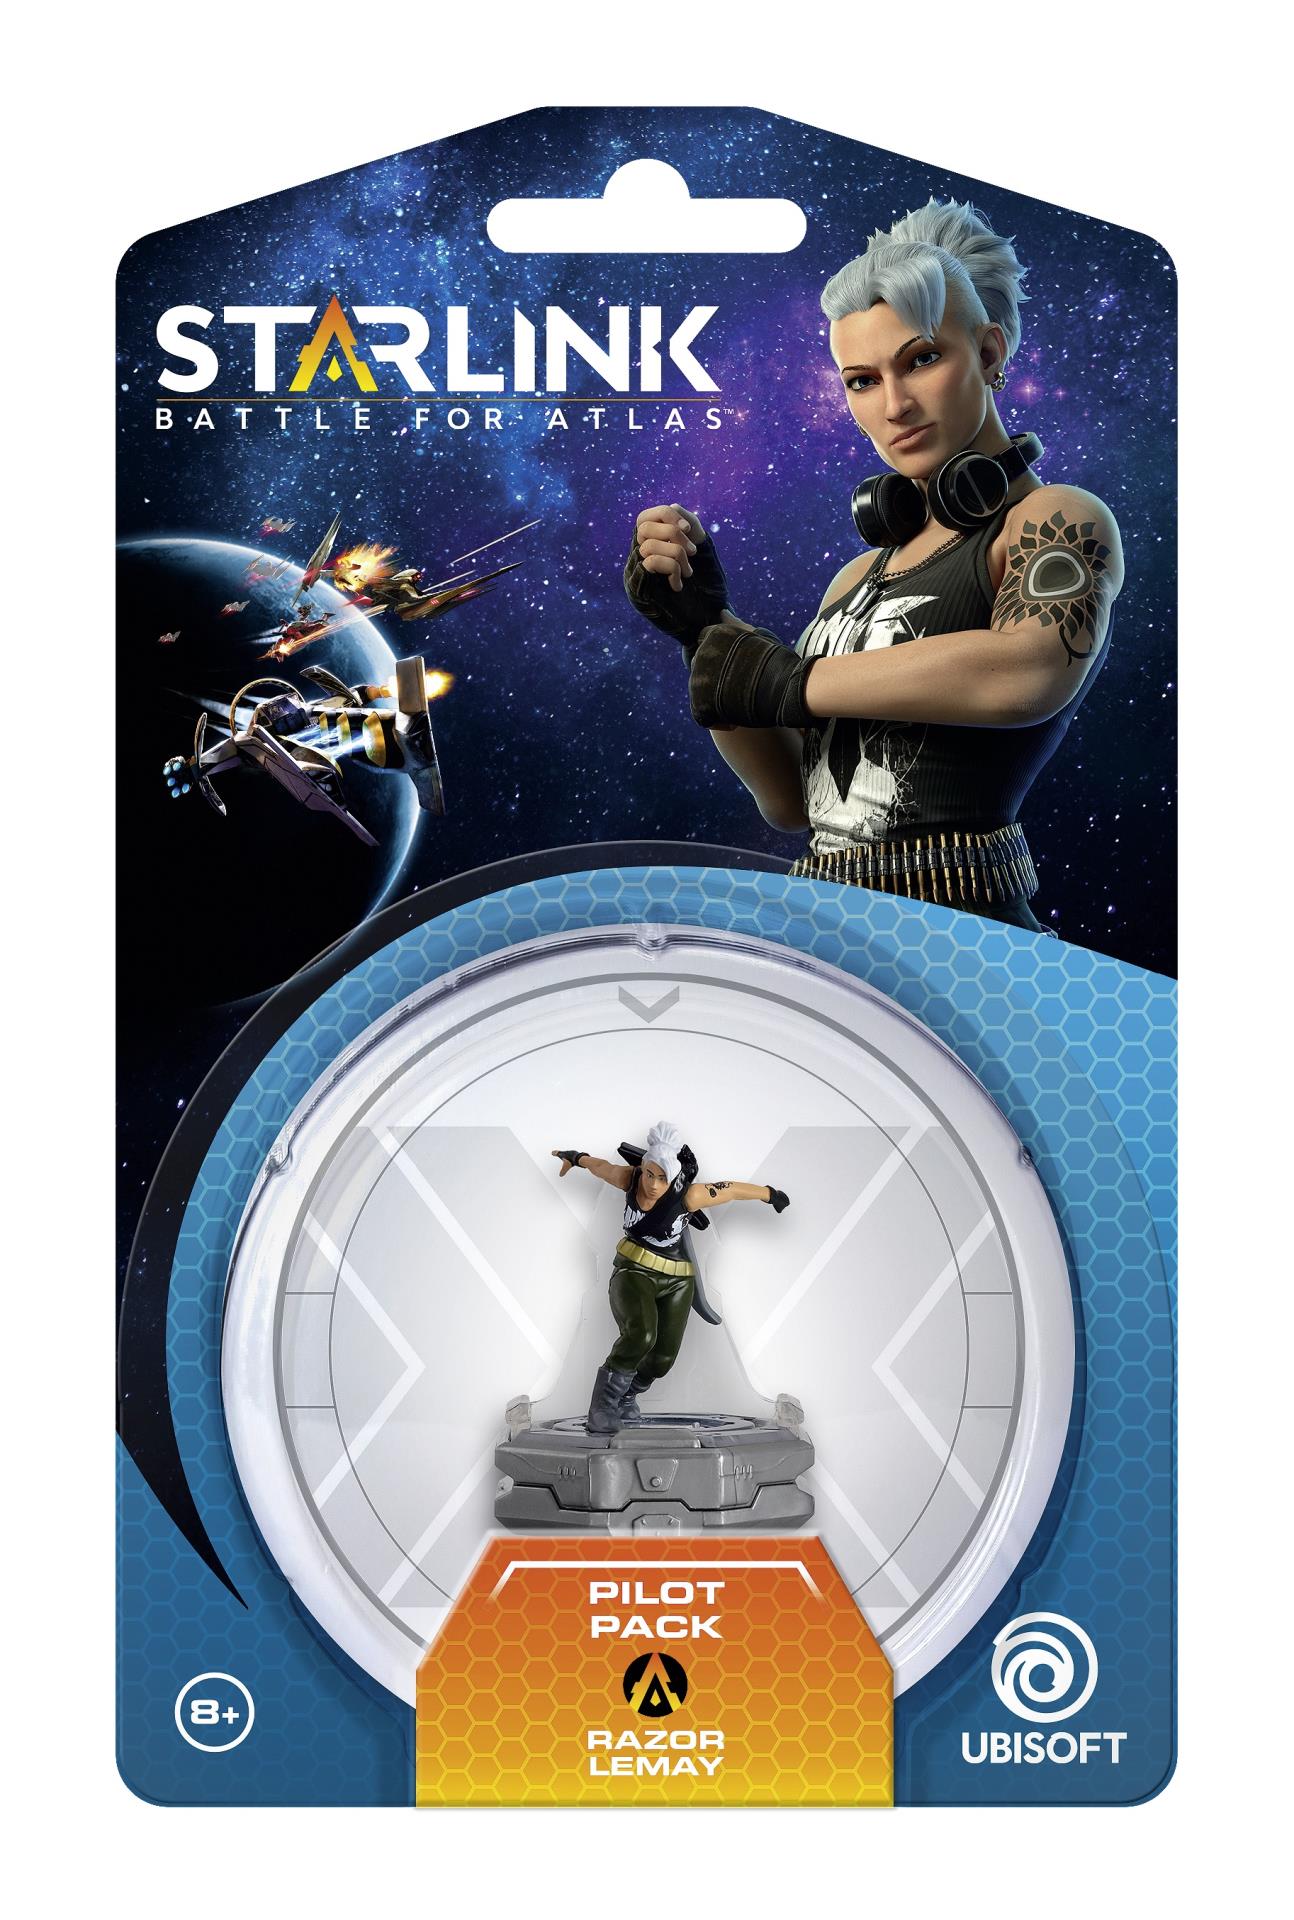 Starlink : Battle for Atlas Razor Lemay Pilot Pack